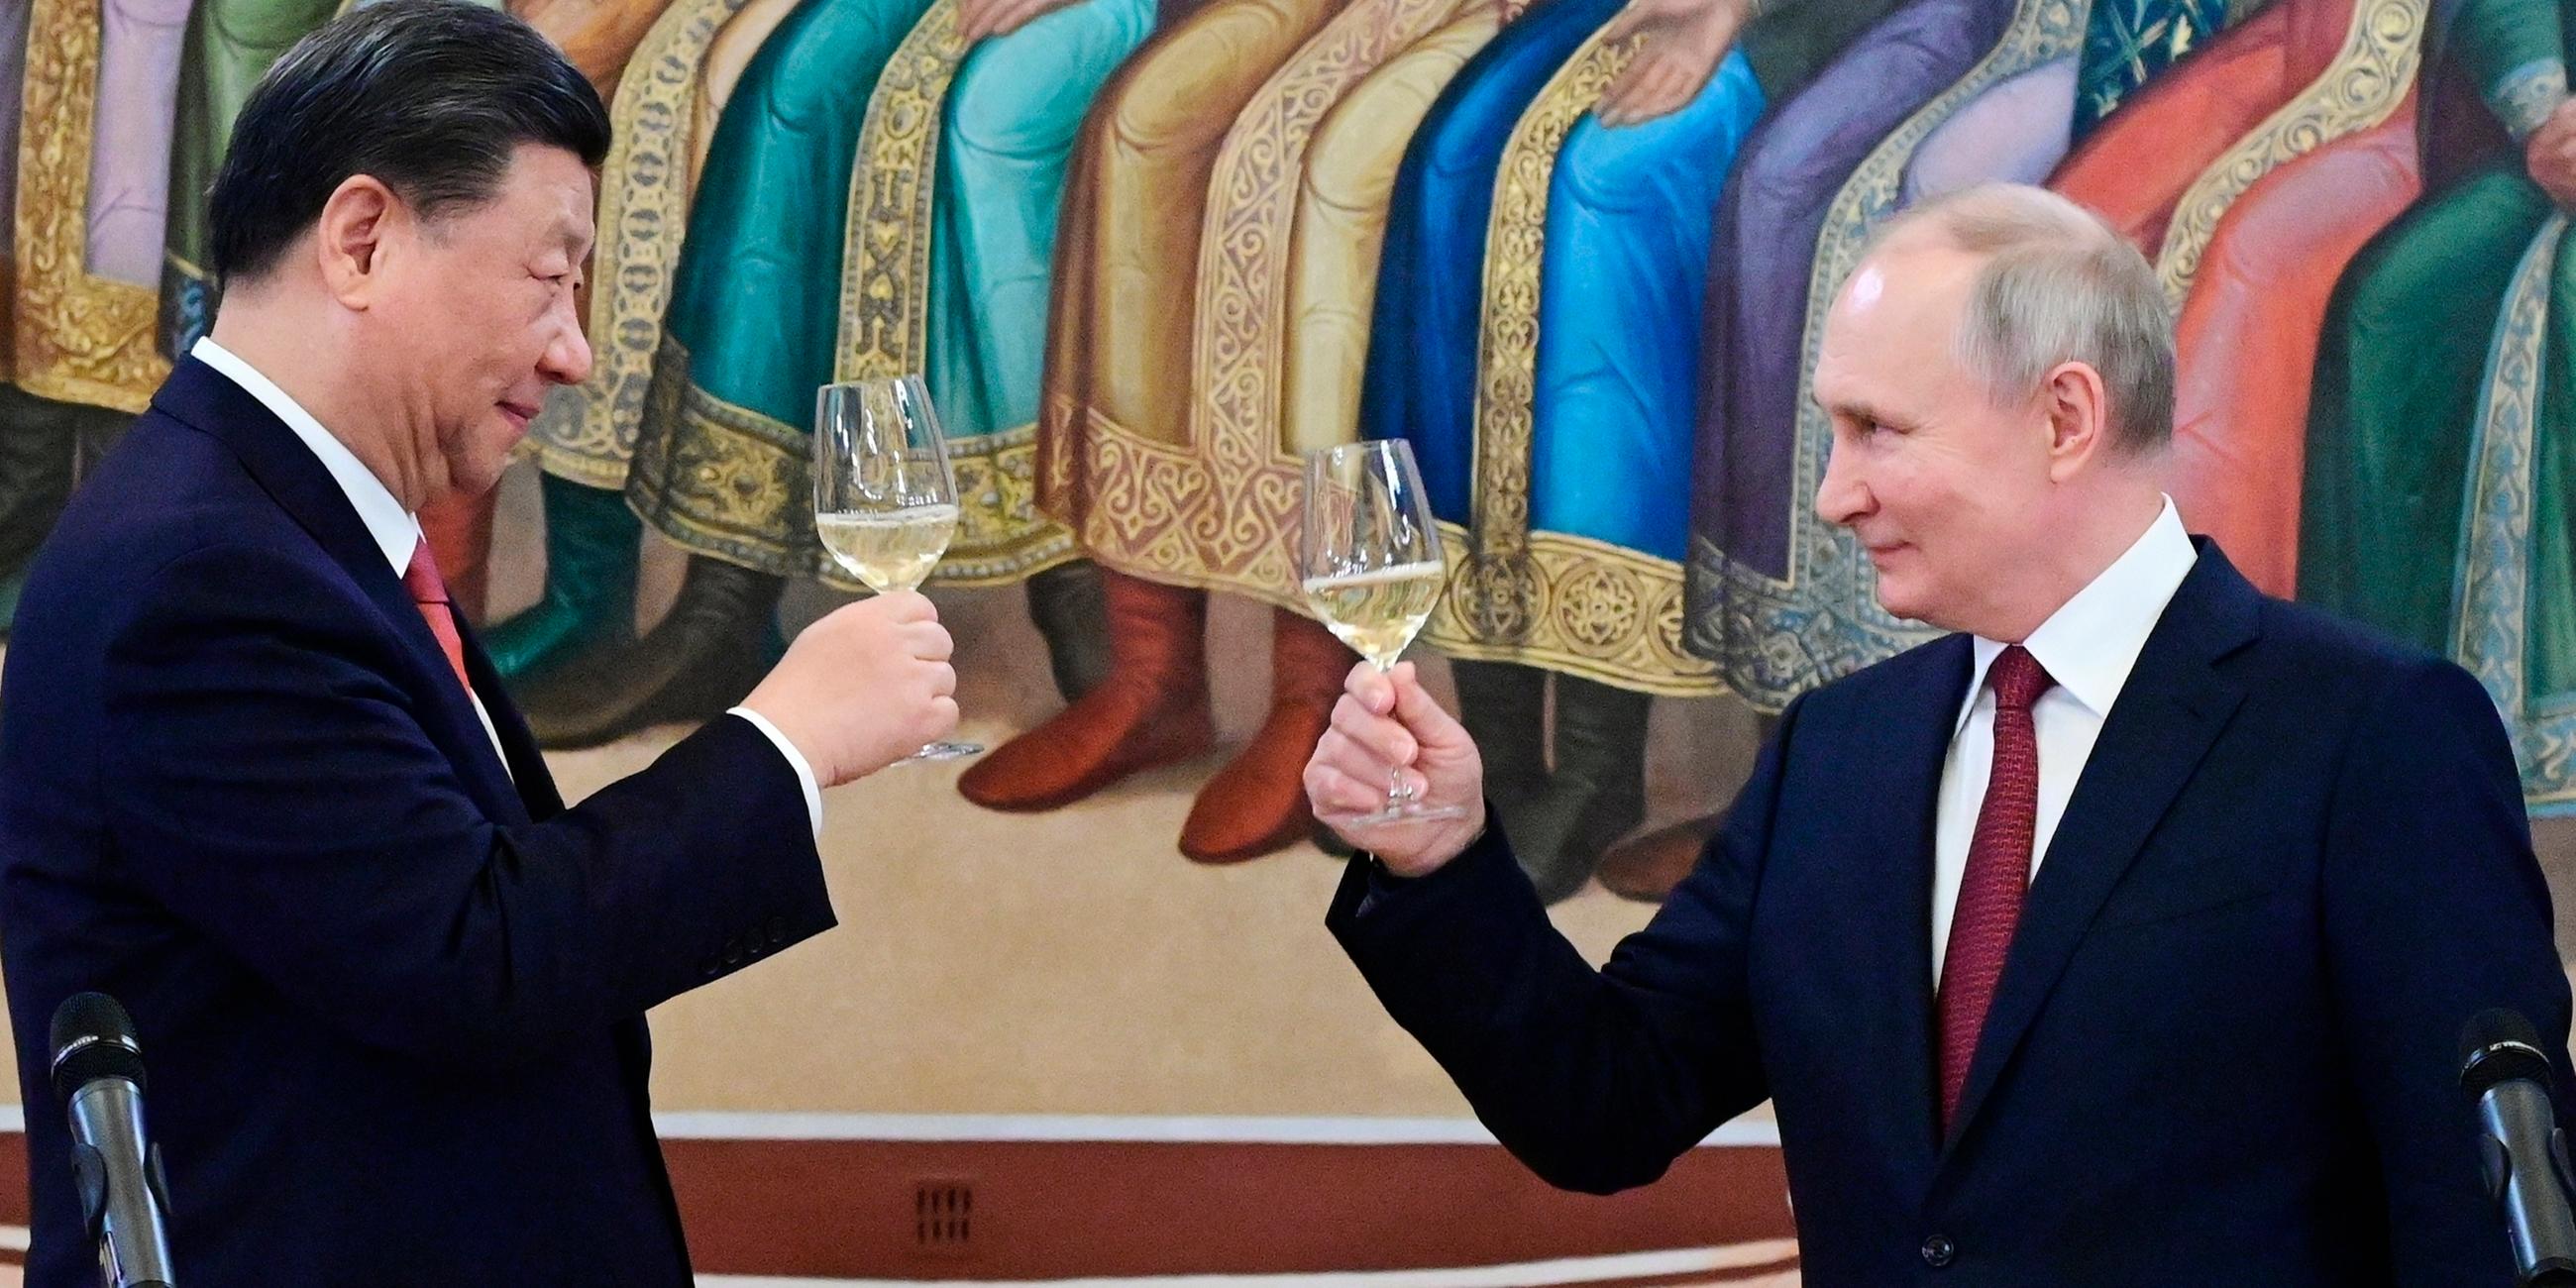 Links im Bild Chinas Staatschef Xi Jinping, rechts der russische Präsident Wladimir Putin. Sie stoßen mit Weingläsern an.